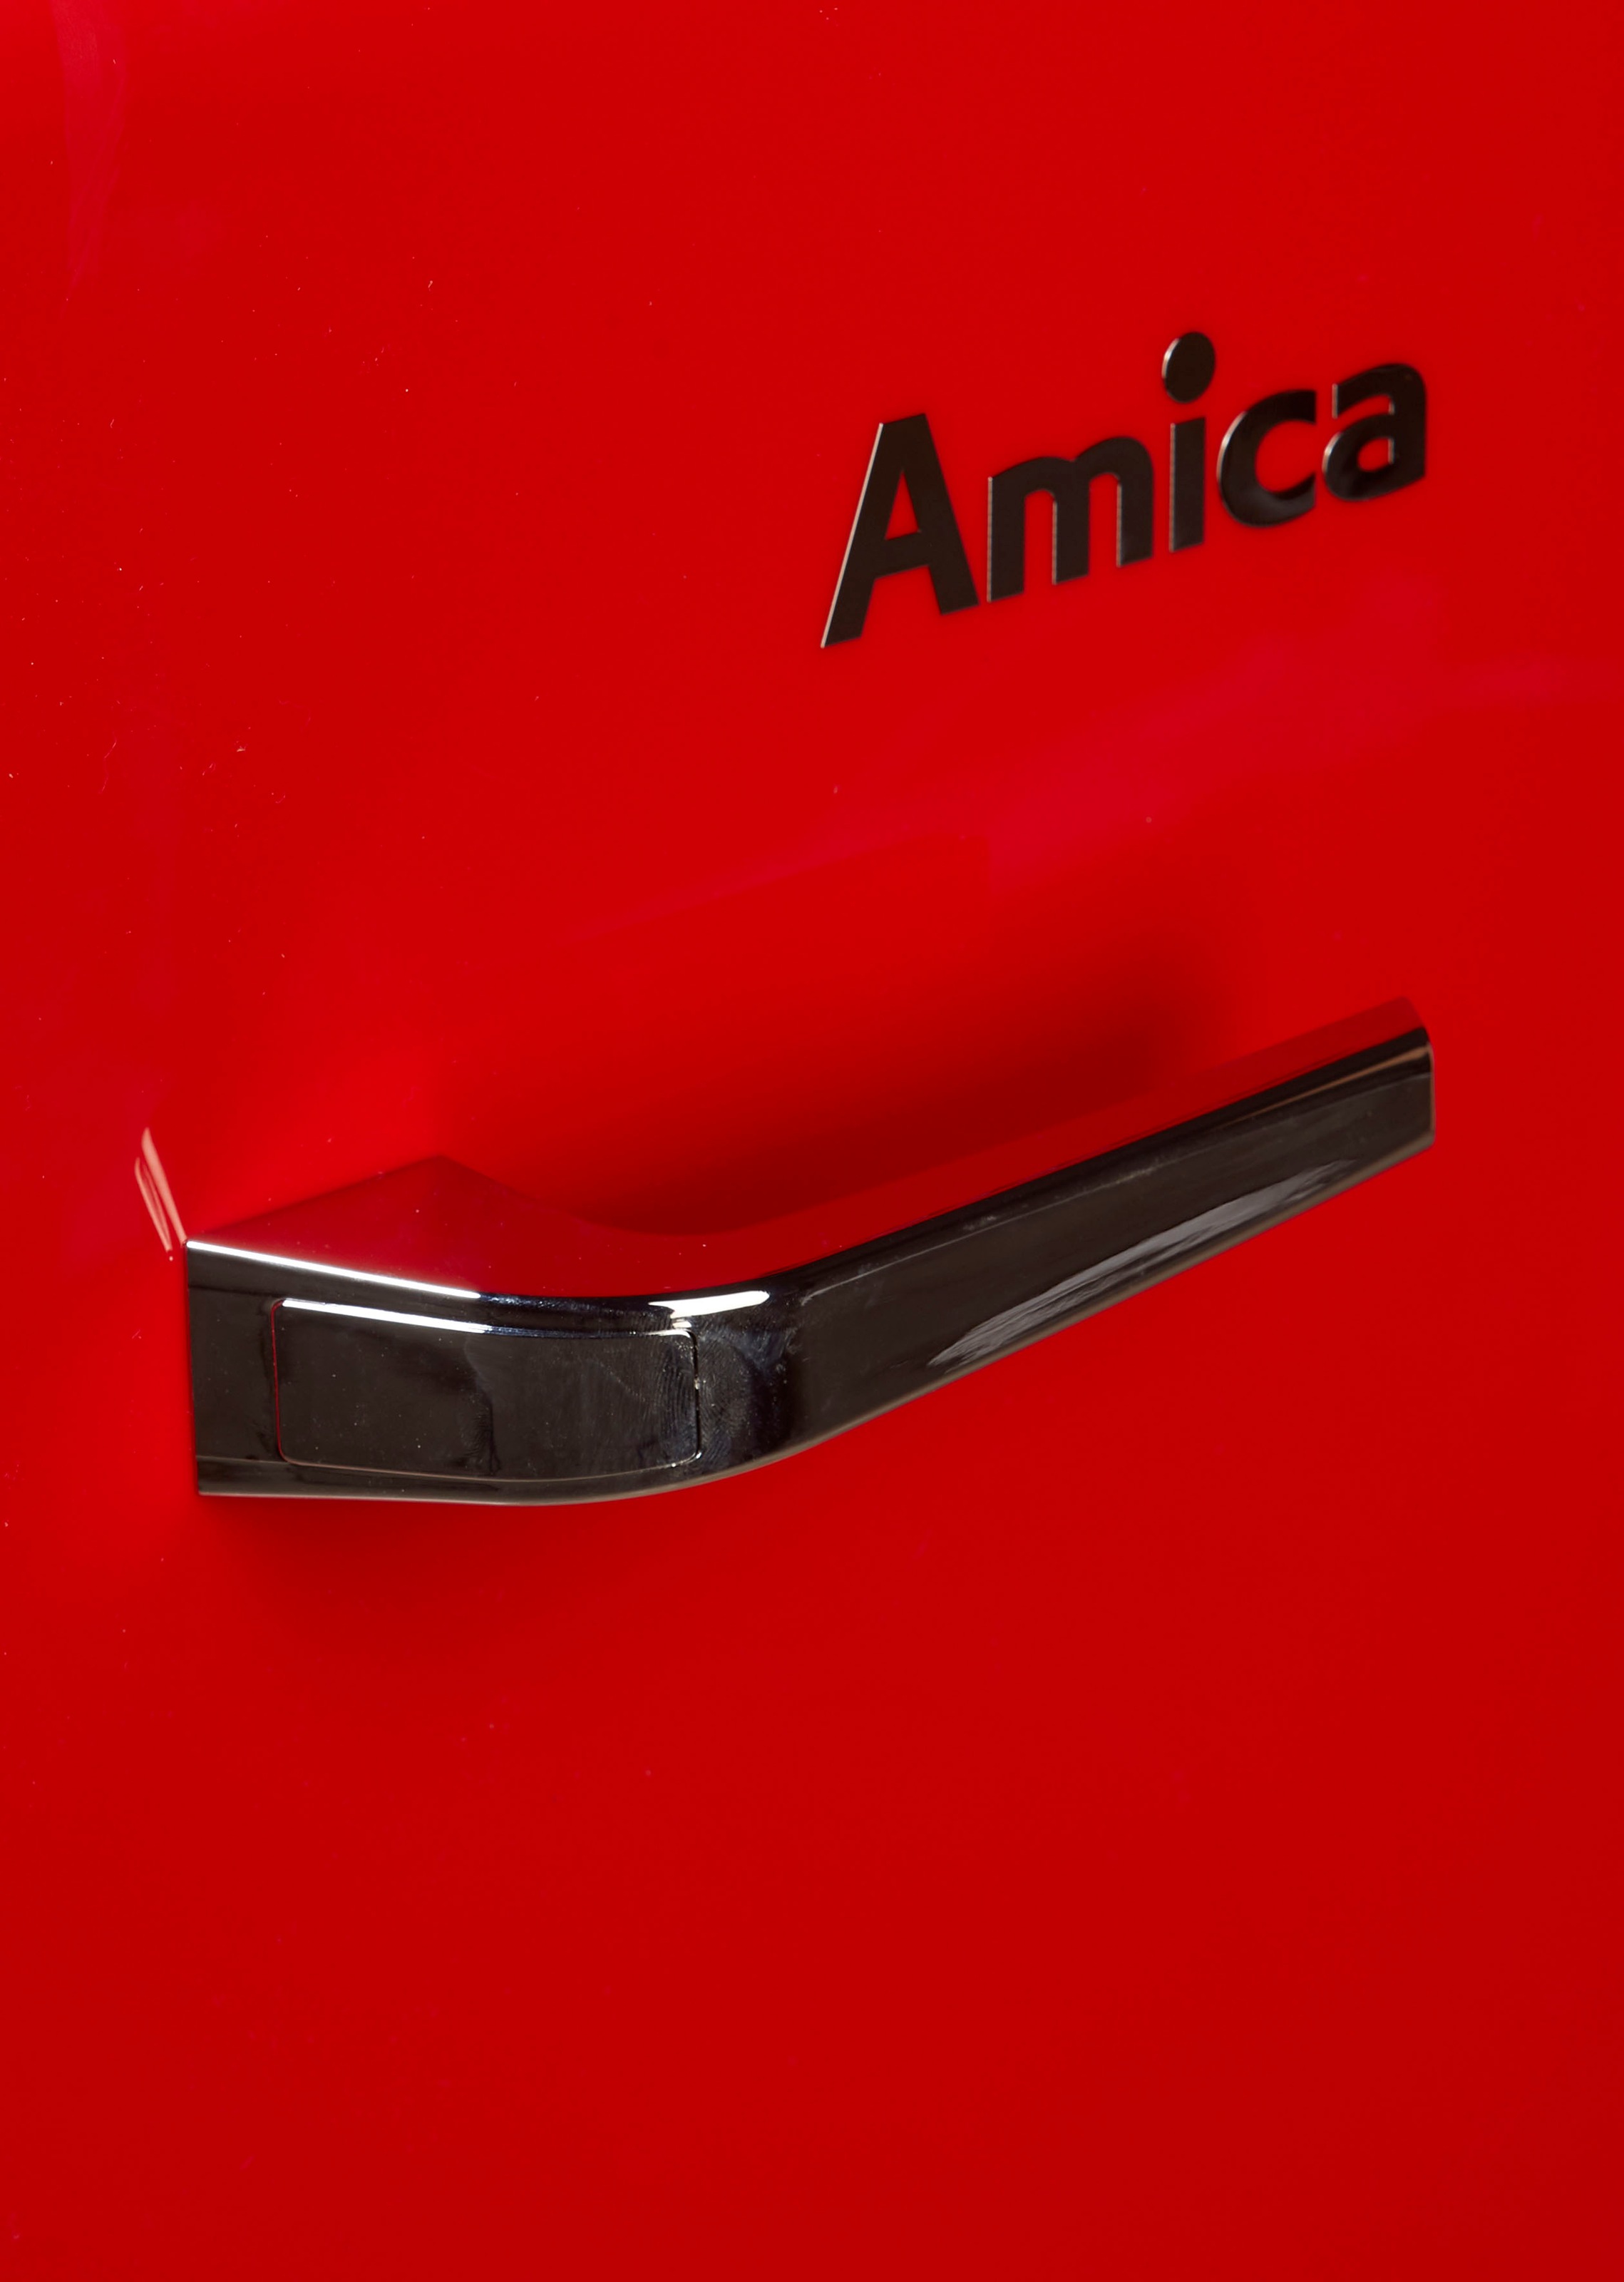 Amica Table Top Kühlschrank »KBR 331 100 R«, KBR 331 100 R, 50,7 cm hoch,  43,5 cm breit jetzt bestellen bei OTTO